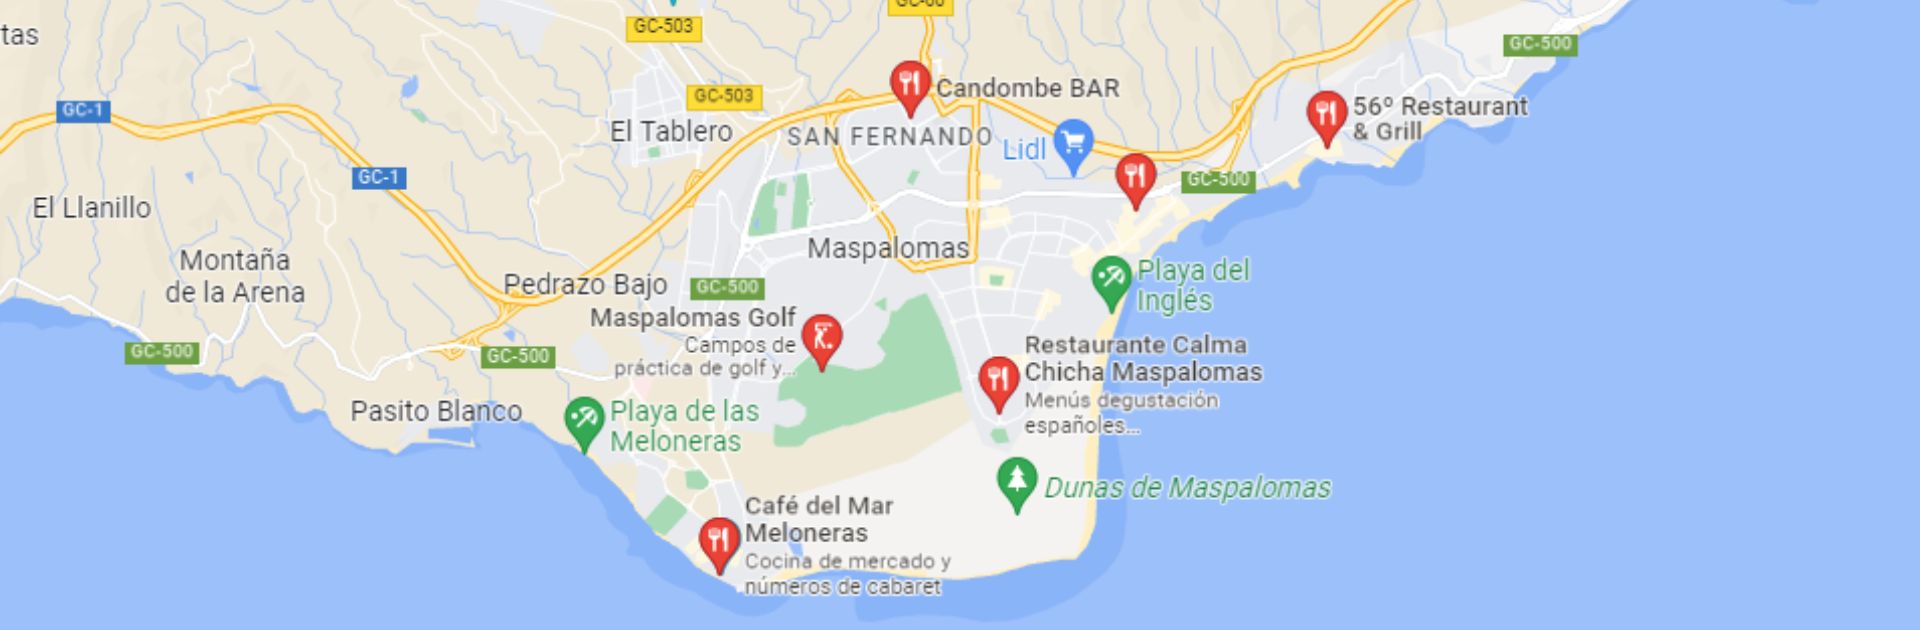 Lugares de los restaurantes de maspalomas